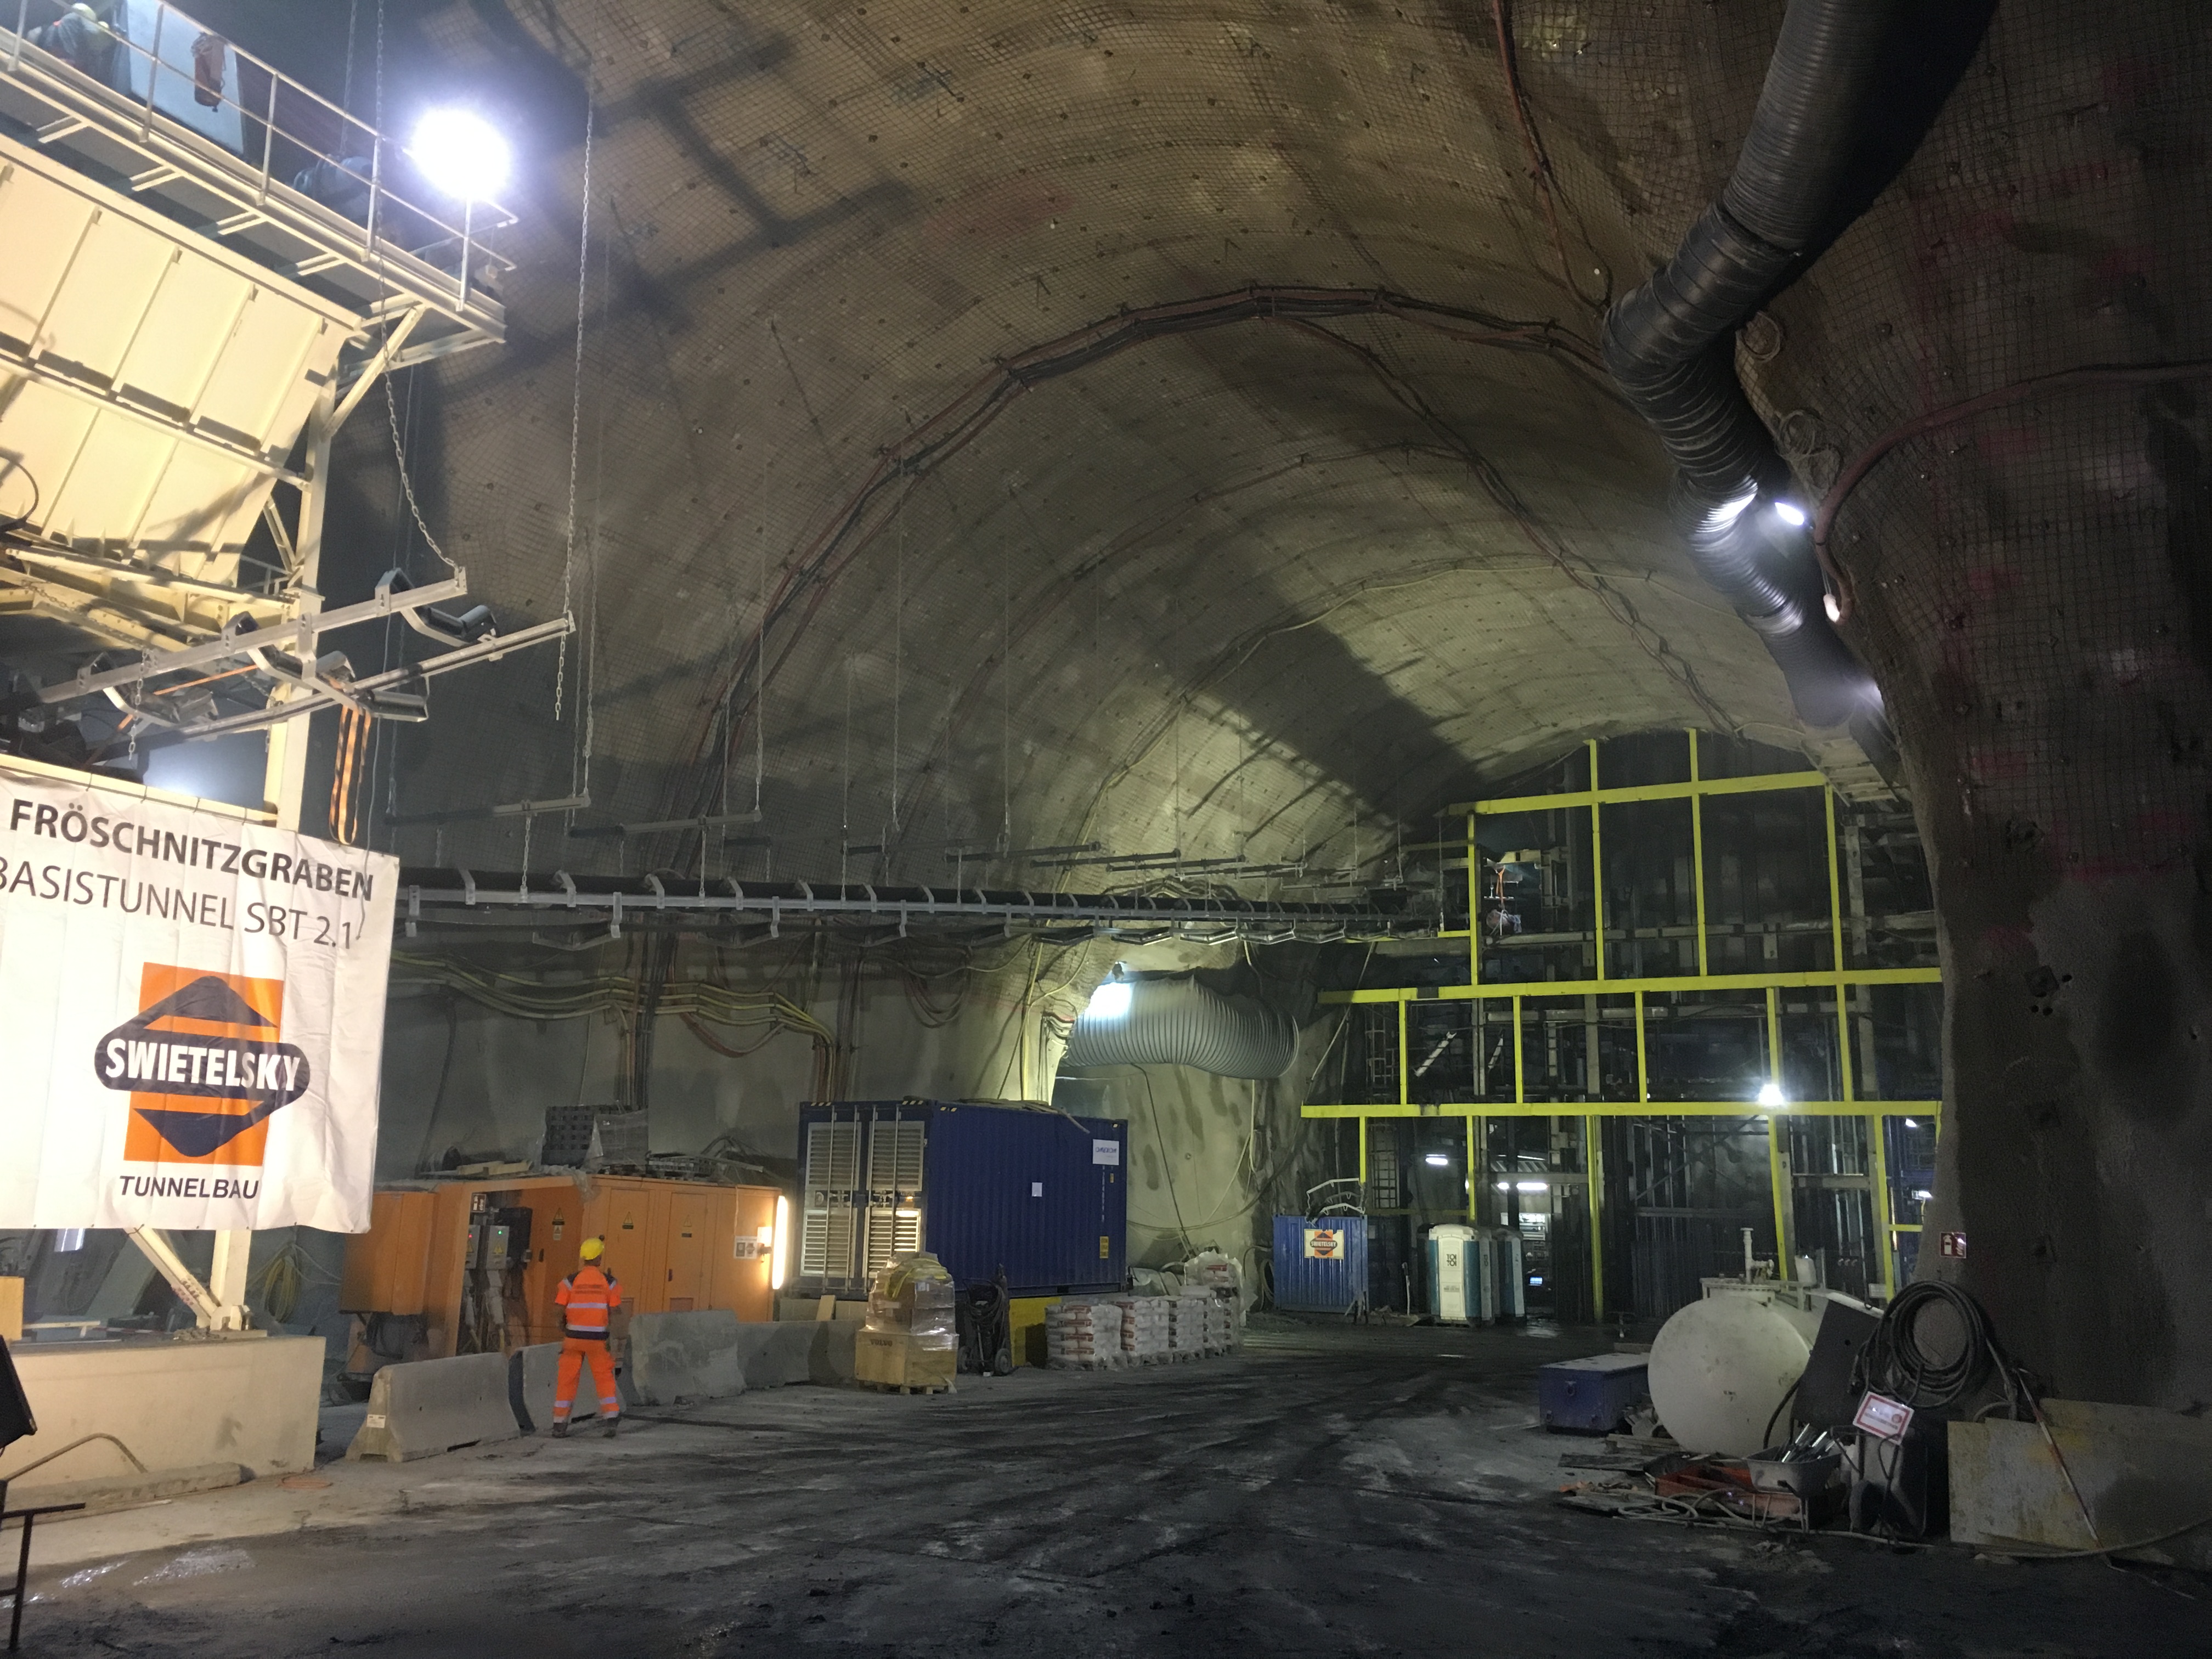 Semmering Basistunnel - SBT 2.1 Fröschnitzgraben - Tunnelkonstruksjon